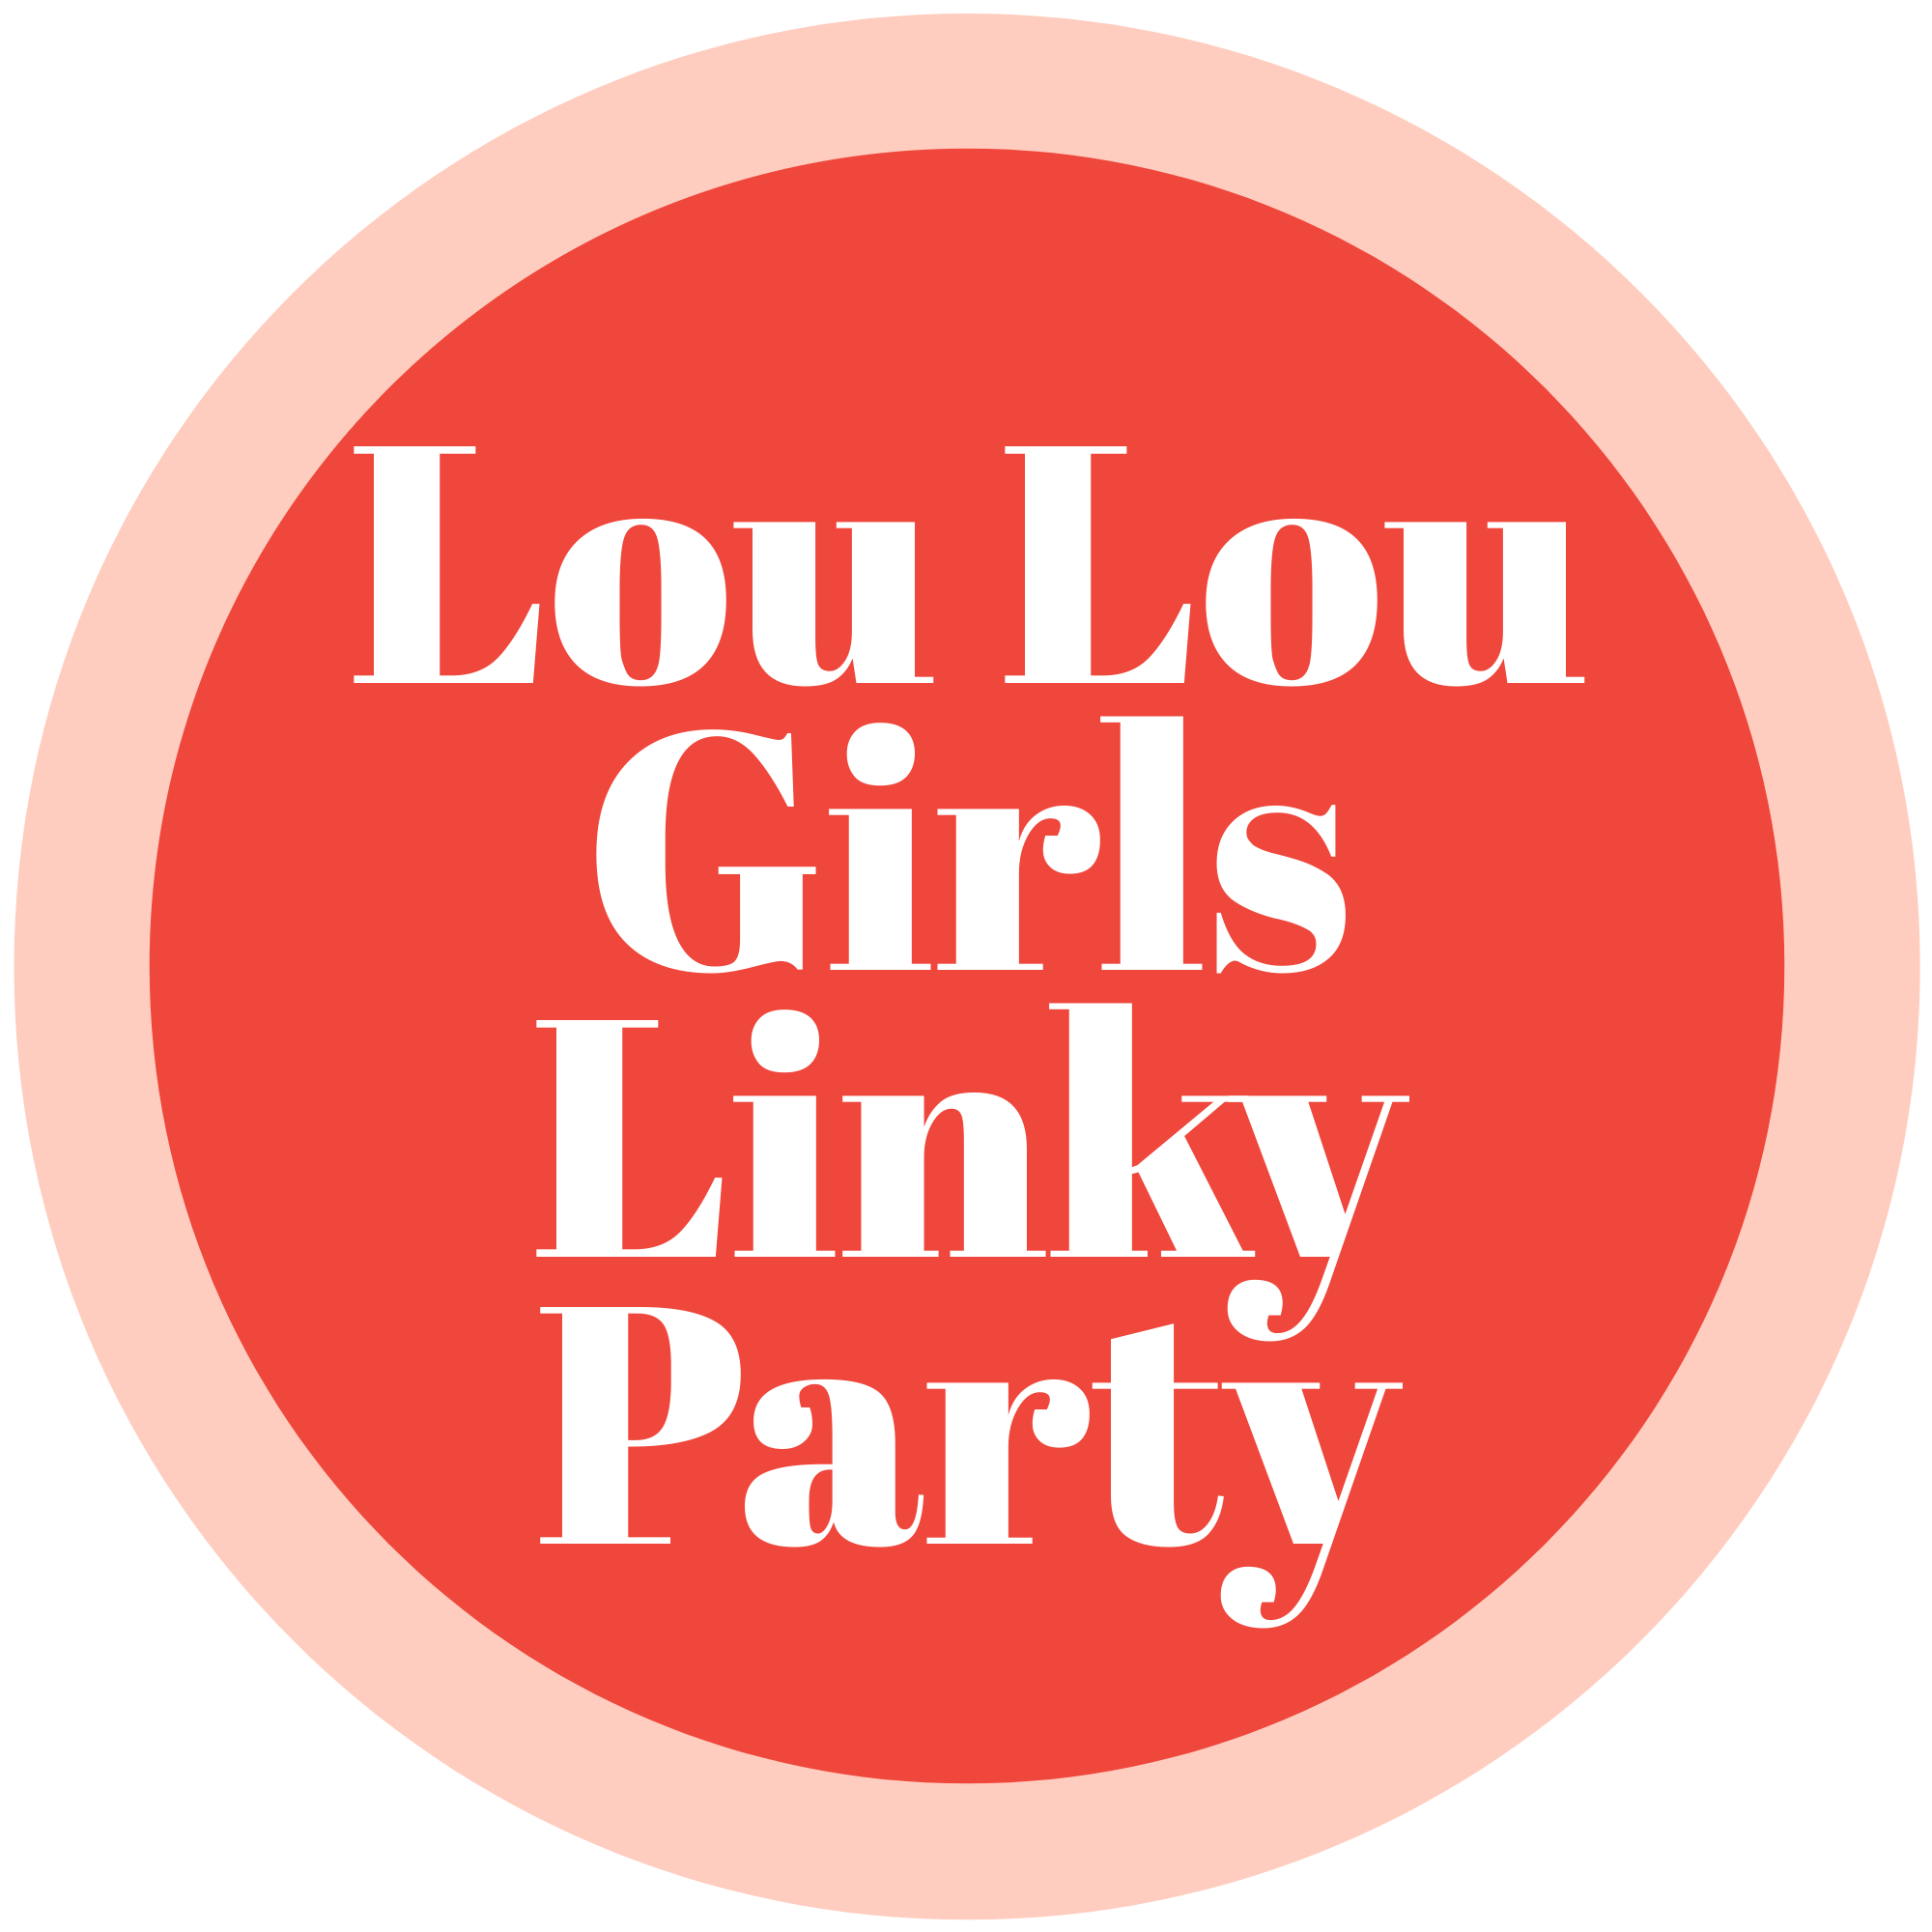 Lou Lou Girls Fabulous Party 444